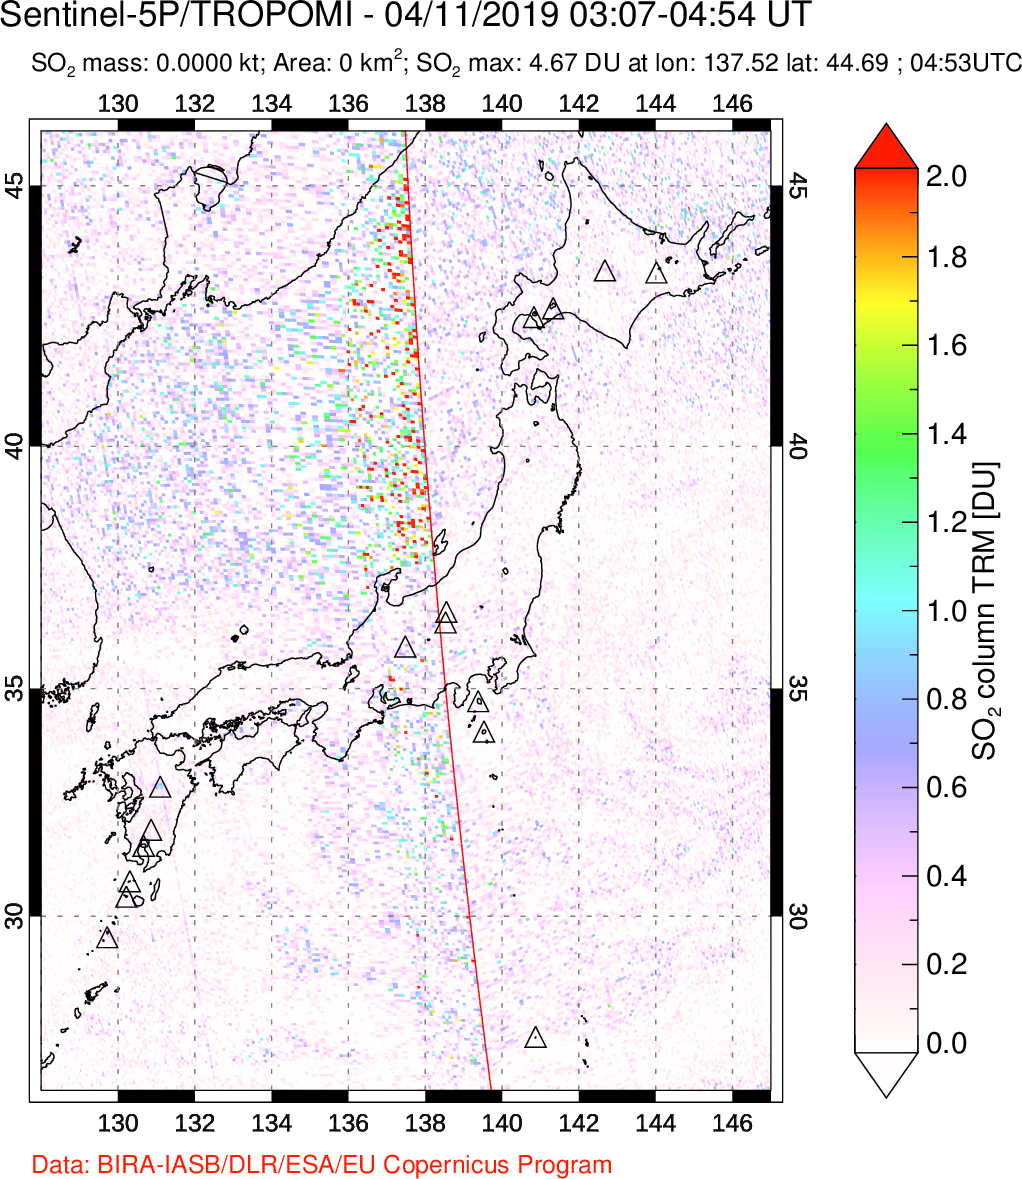 A sulfur dioxide image over Japan on Apr 11, 2019.